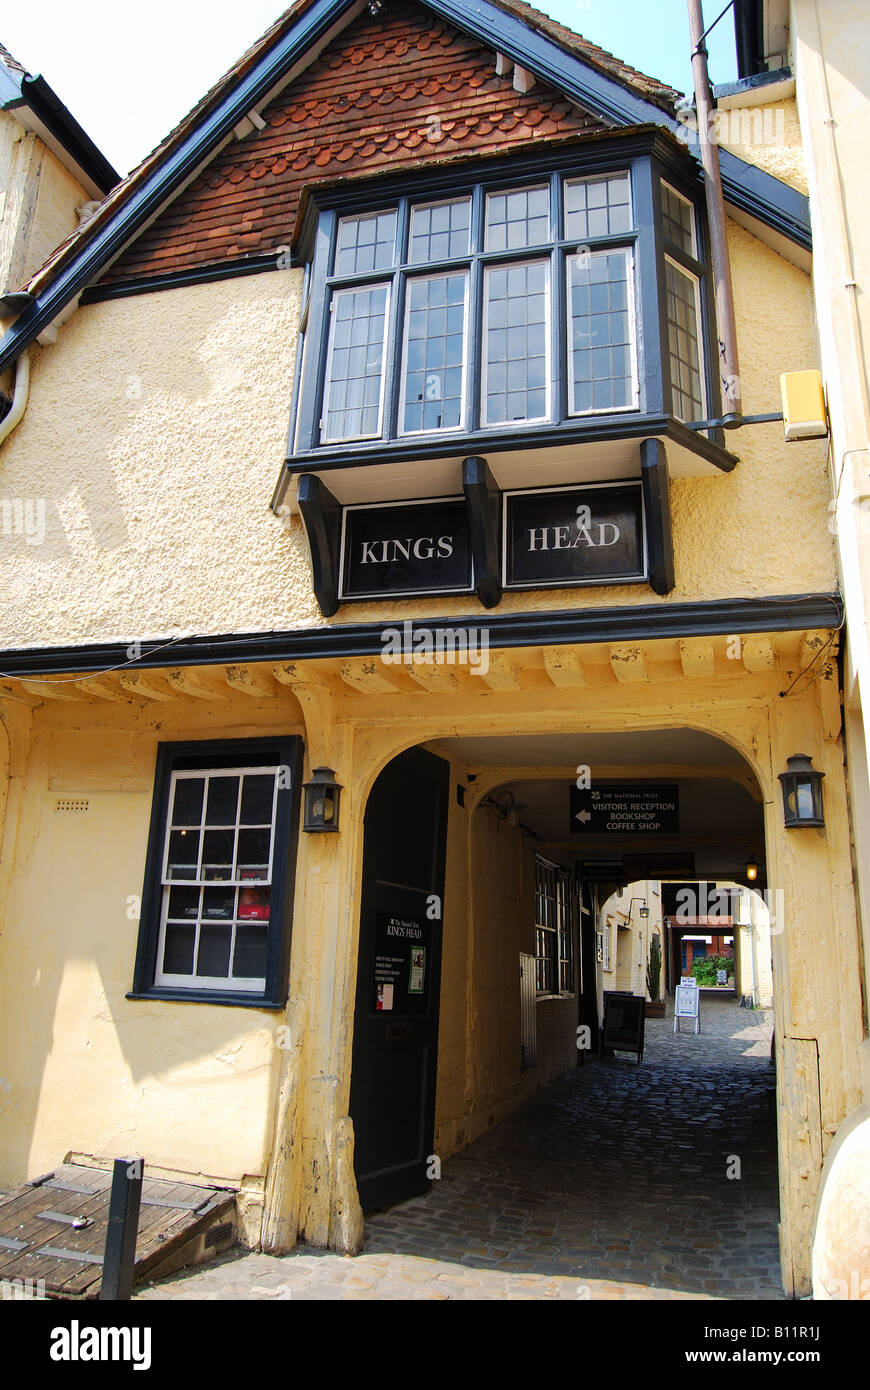 Xiii secolo King's Head Pub, King's passaggio testa, la piazza del mercato, Aylesbury, Buckinghamshire, Inghilterra, Regno Unito Foto Stock